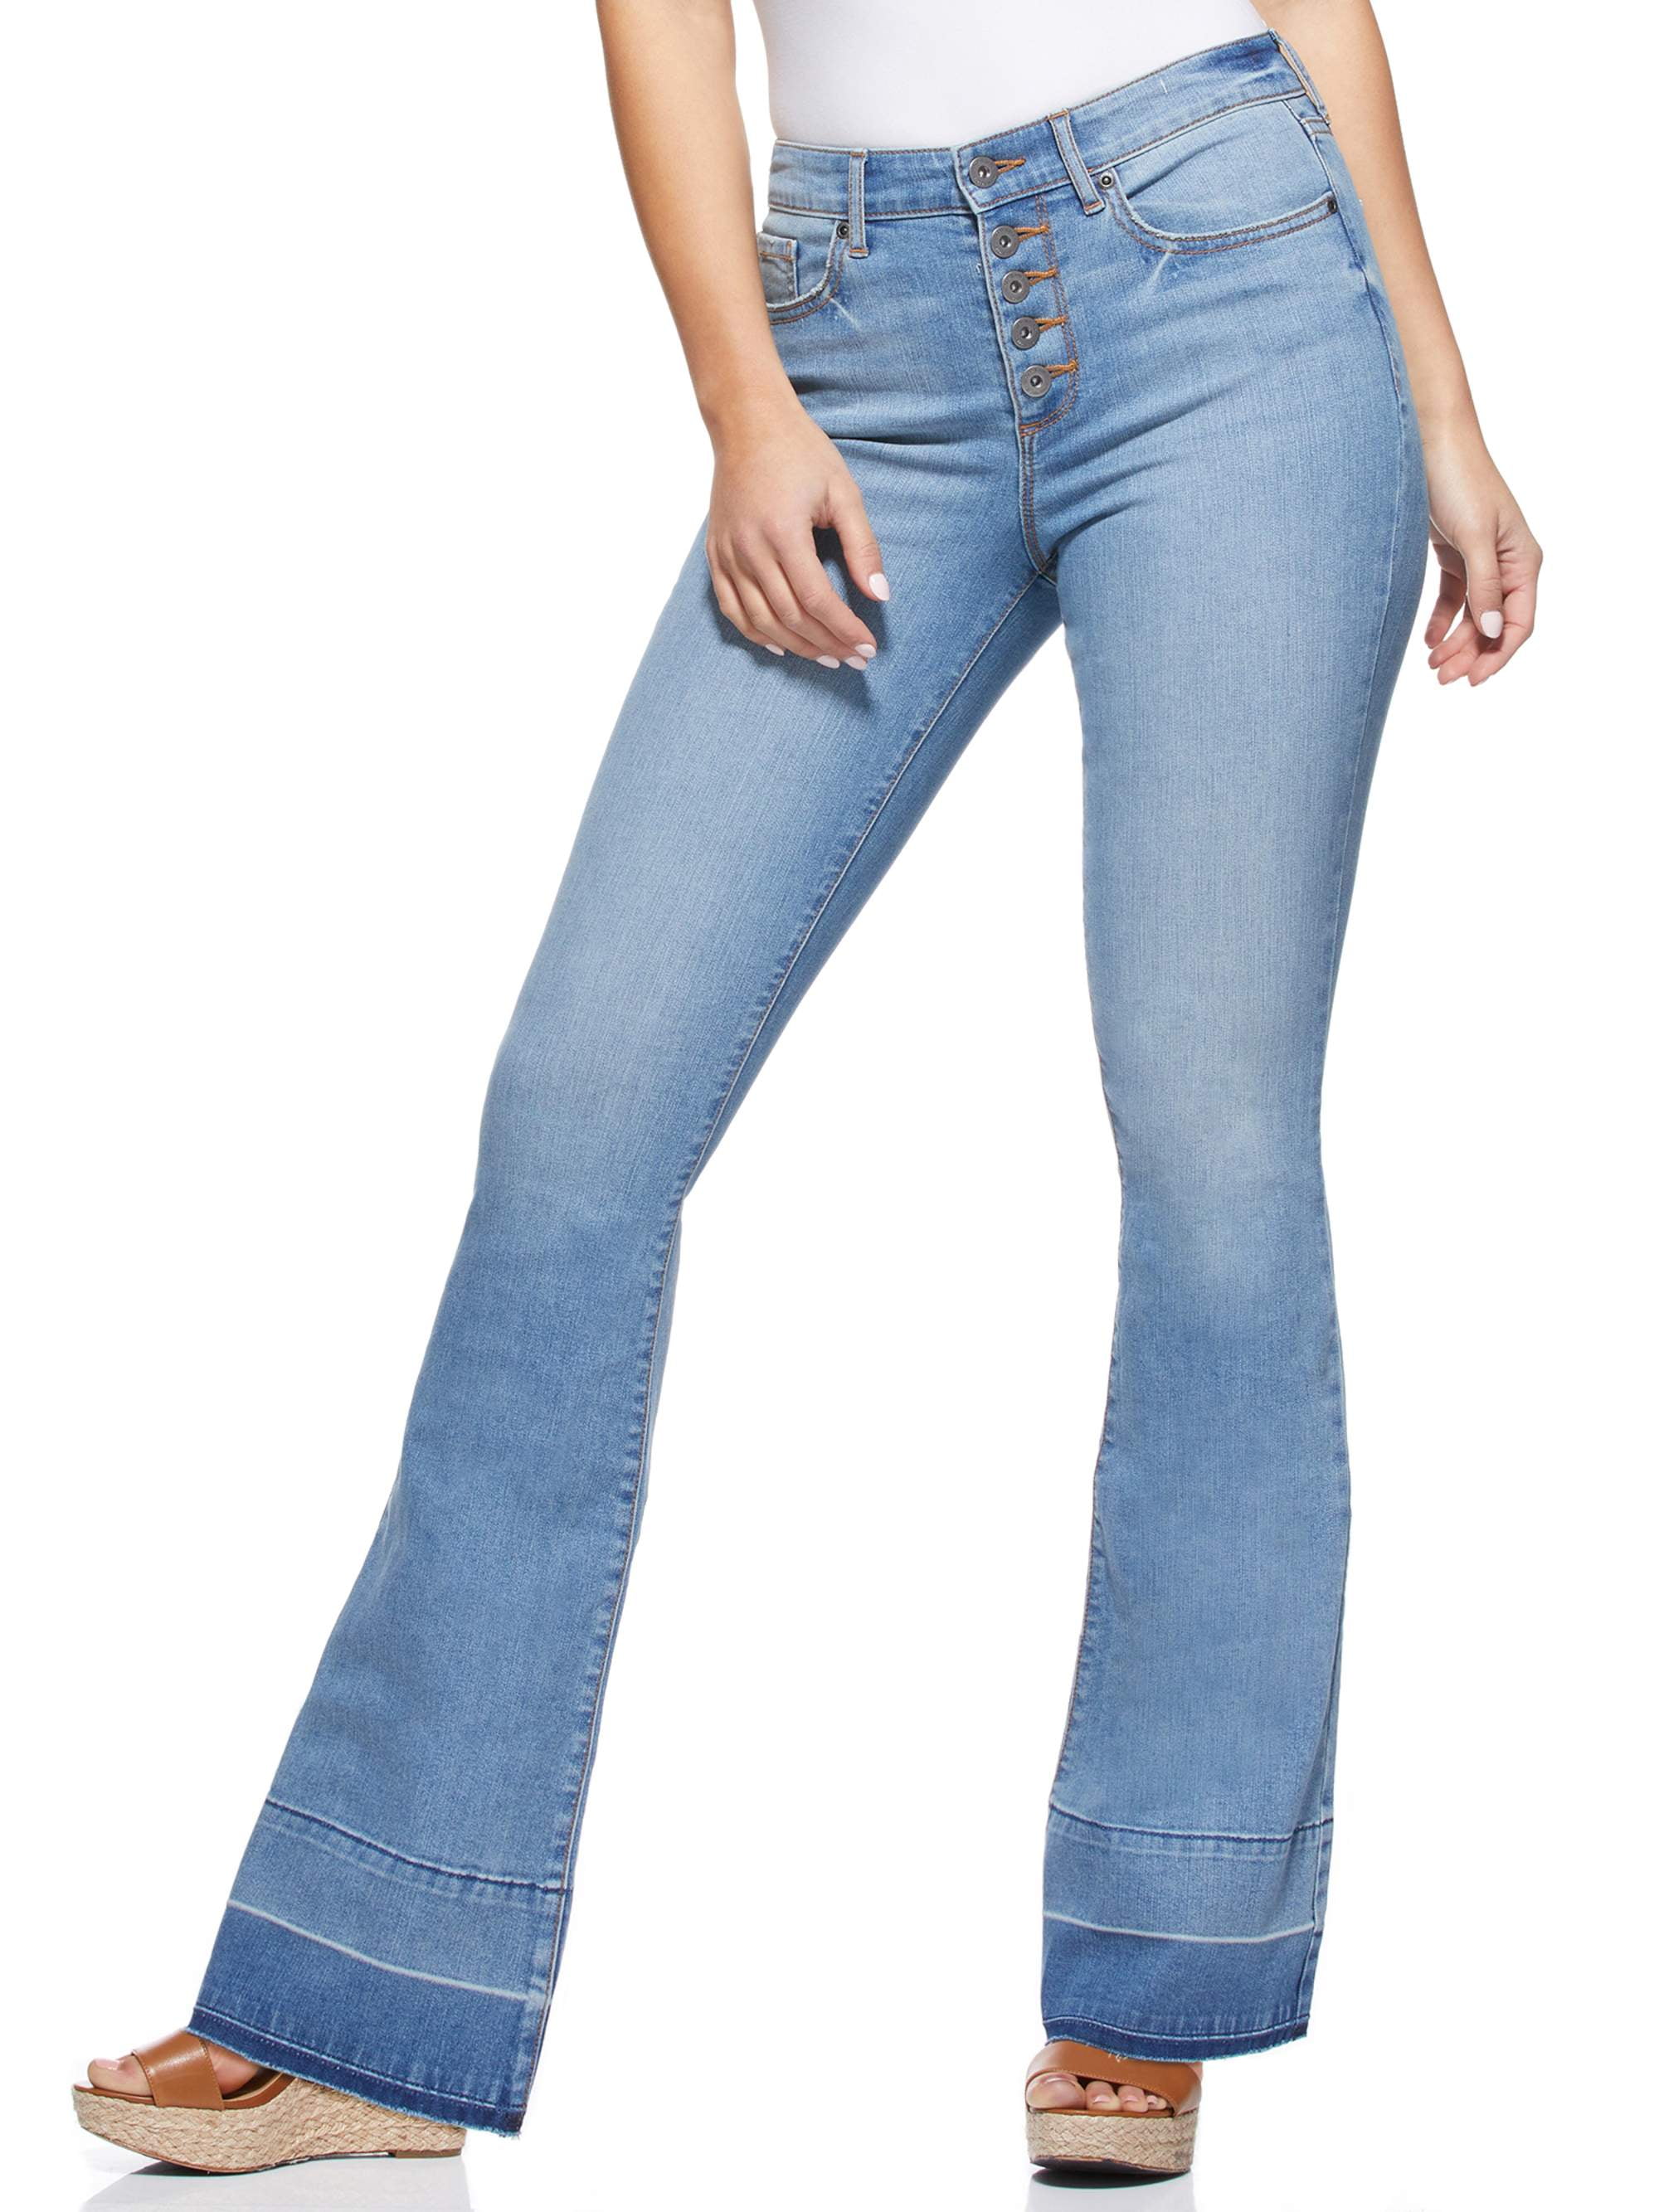 Sofia Jeans by Sofia Vergara Melisa High Waist Flare Jeans, Women’s ...